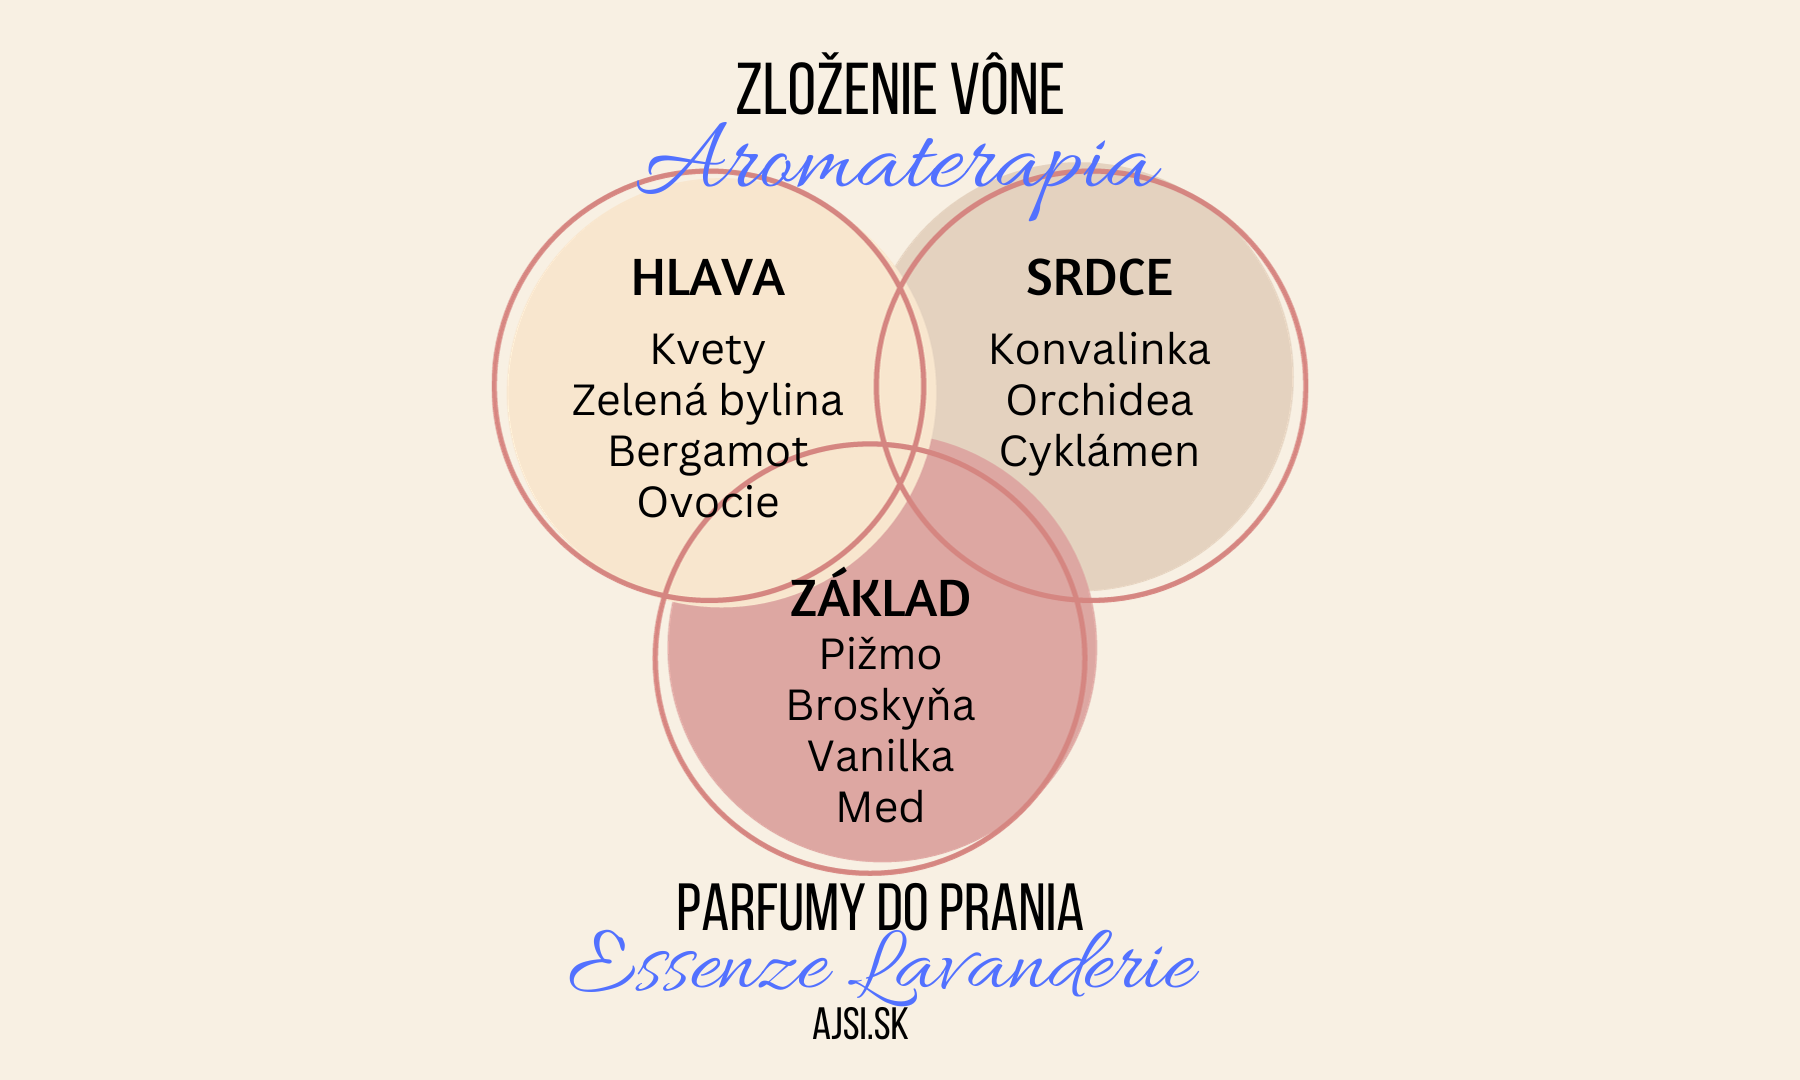 Aromaterapia zloženie vône Essenze Lavanderie ajsi.sk